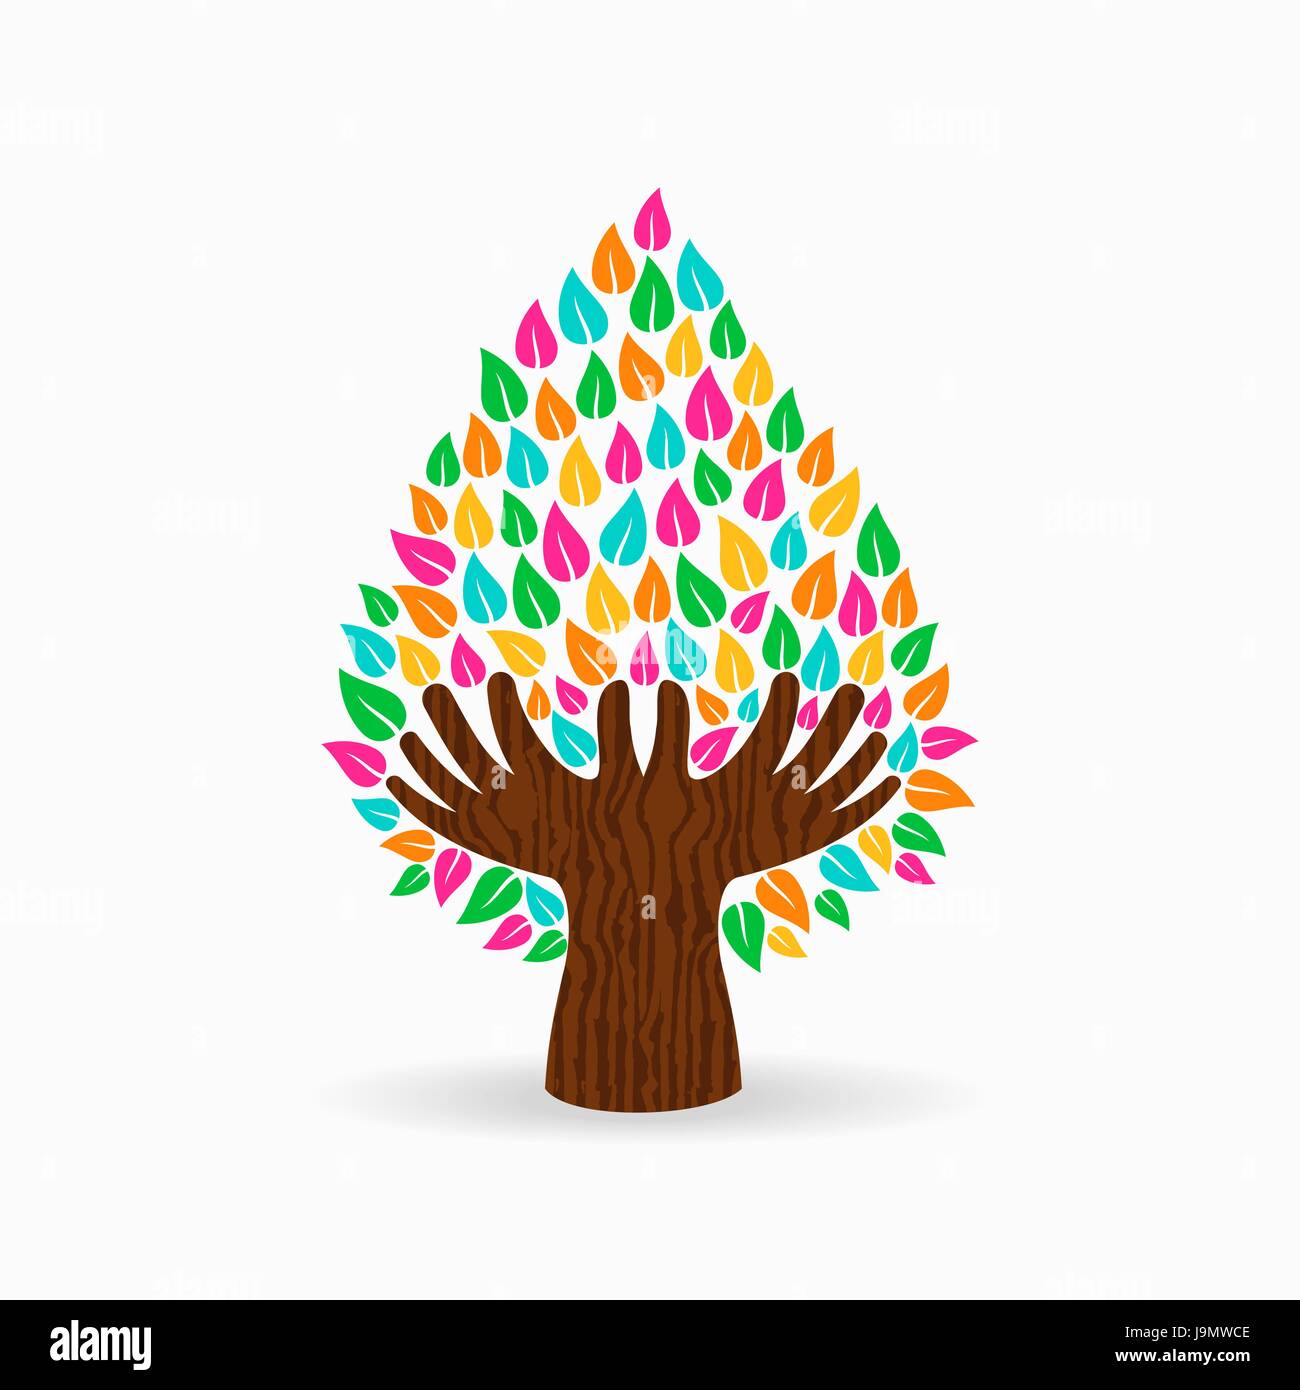 Symbole de l'arbre avec des mains et des feuilles colorées. Concept illustration pour aider à l'organisation du projet, l'environnement ou de travail social. Vecteur EPS10. Illustration de Vecteur